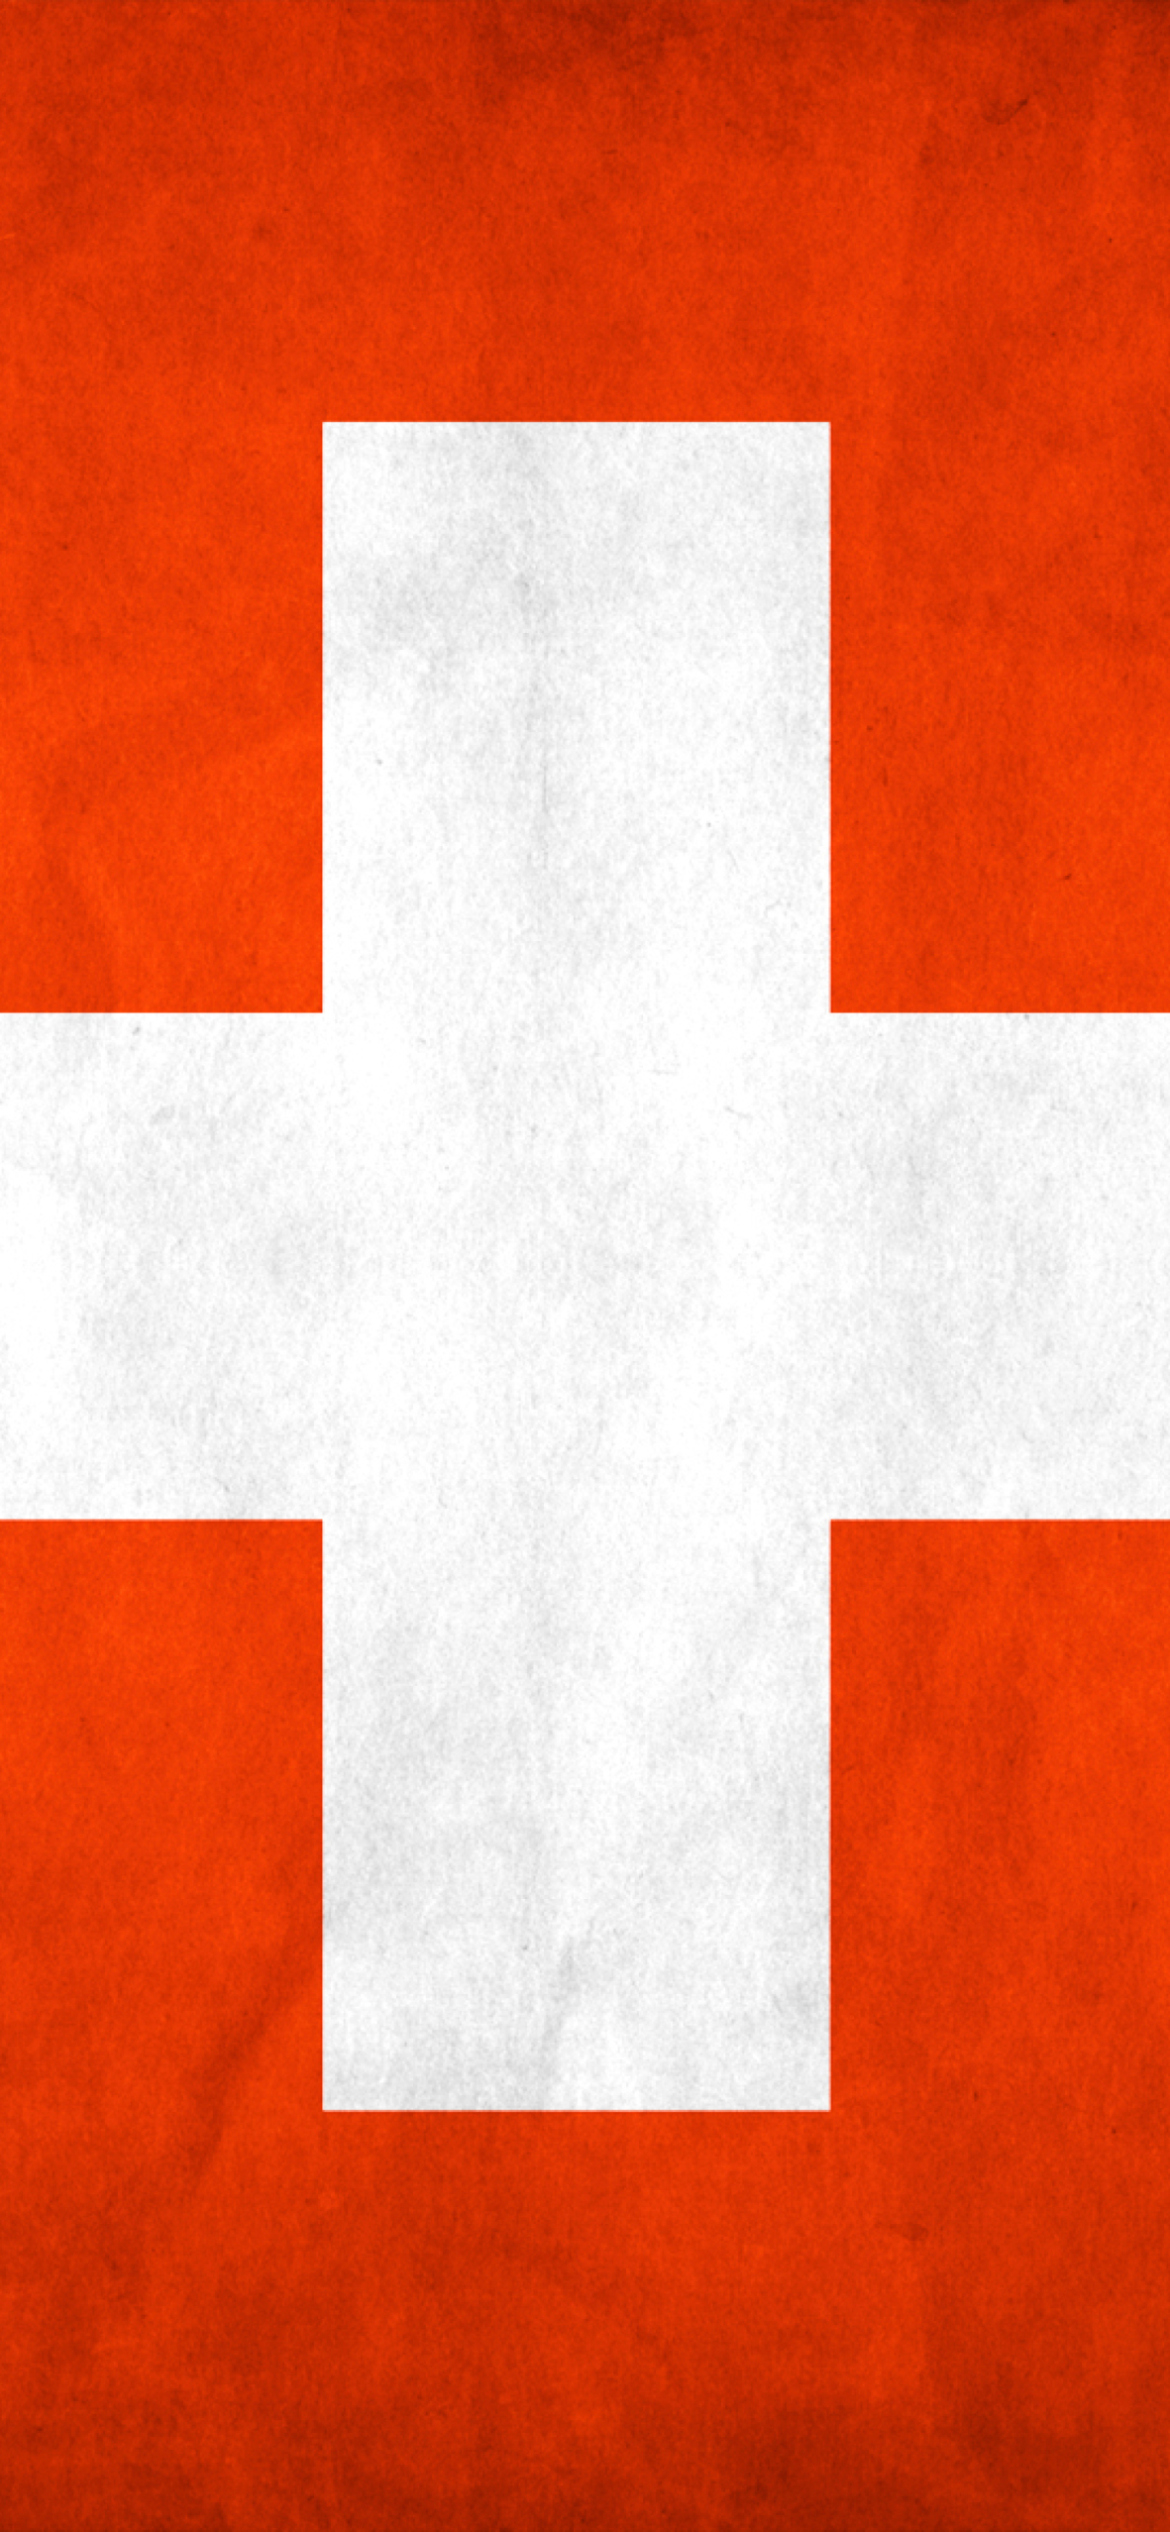 Switzerland Grunge Flag wallpaper 1170x2532